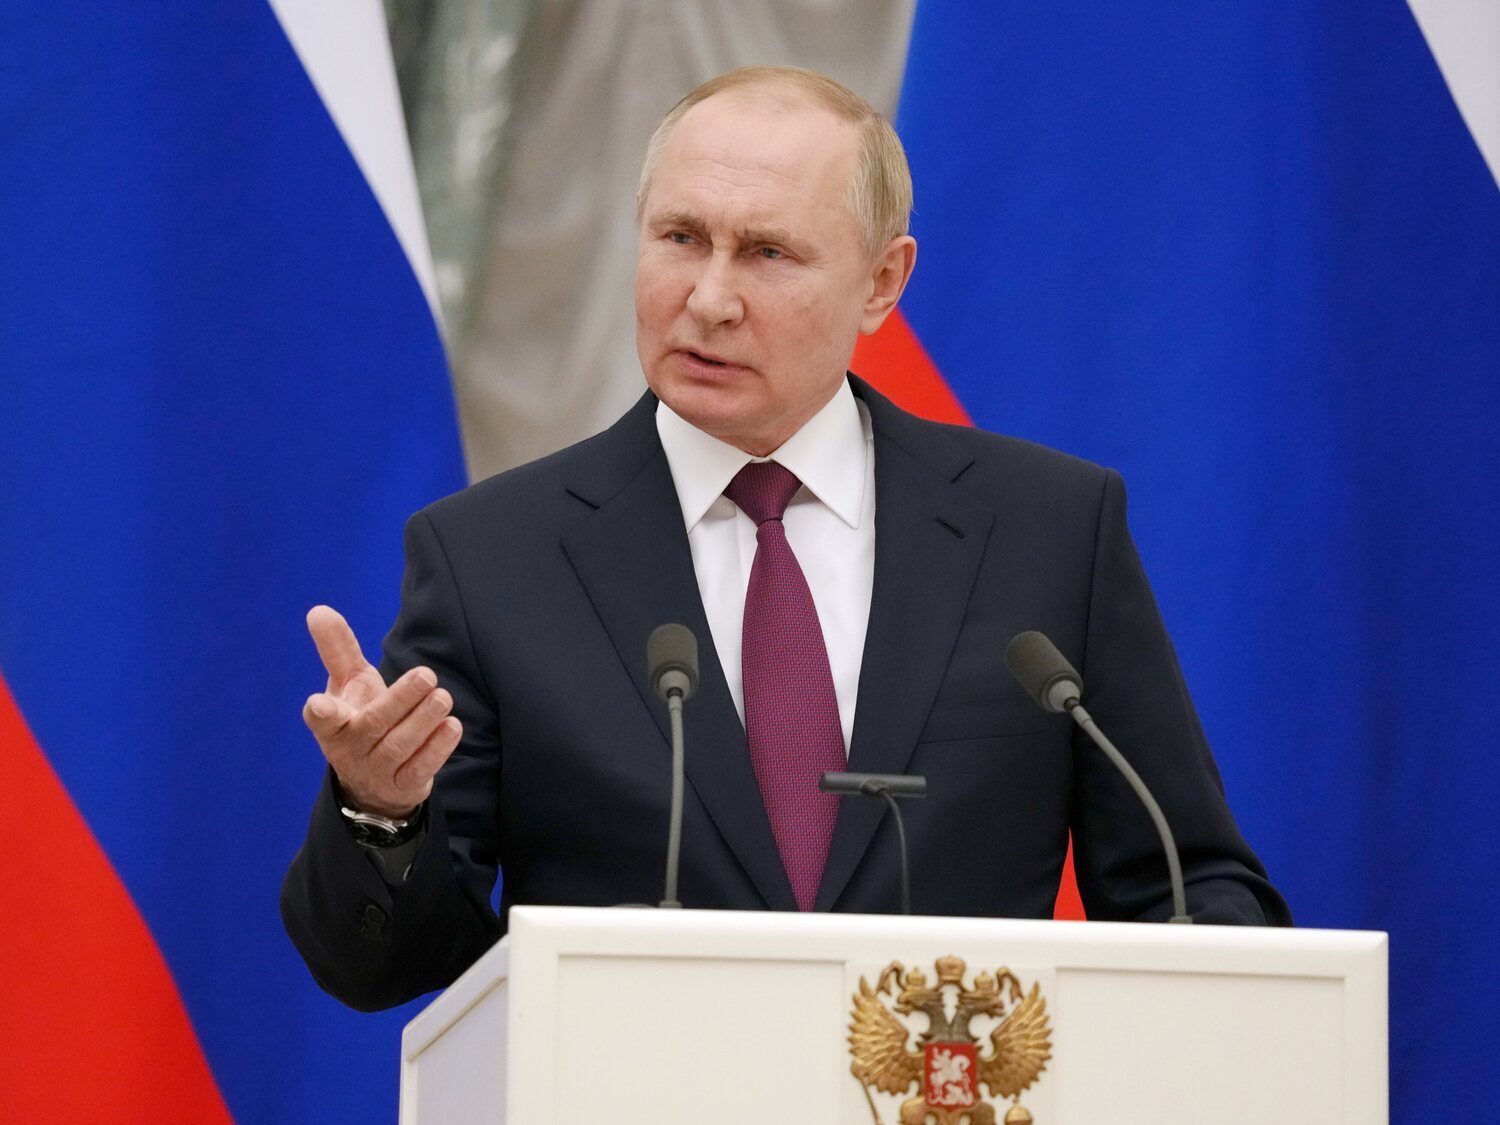 ¿Qué es el tratado Nuevo START que Putin ha anunciado que suspende?